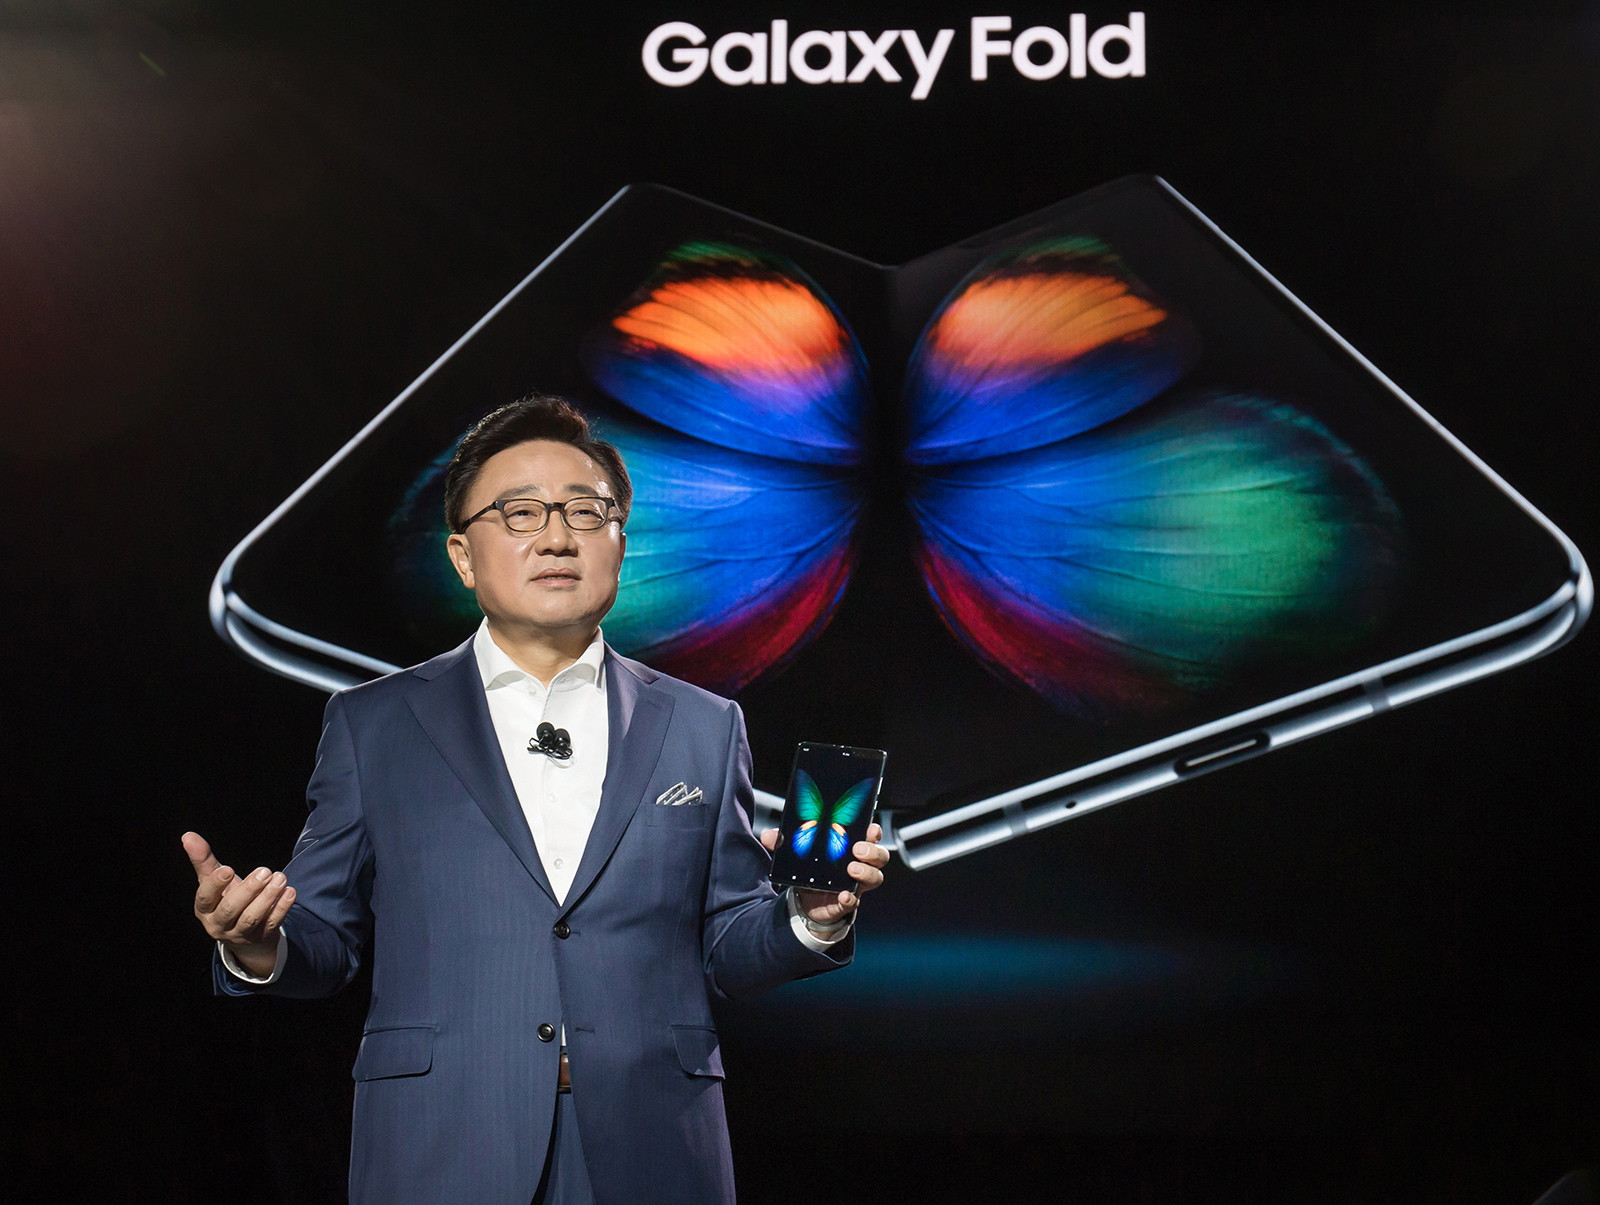  Samsung meluncurkan gadget smartphone / tablet yang dapat dilipat sendiri awal tahun ini